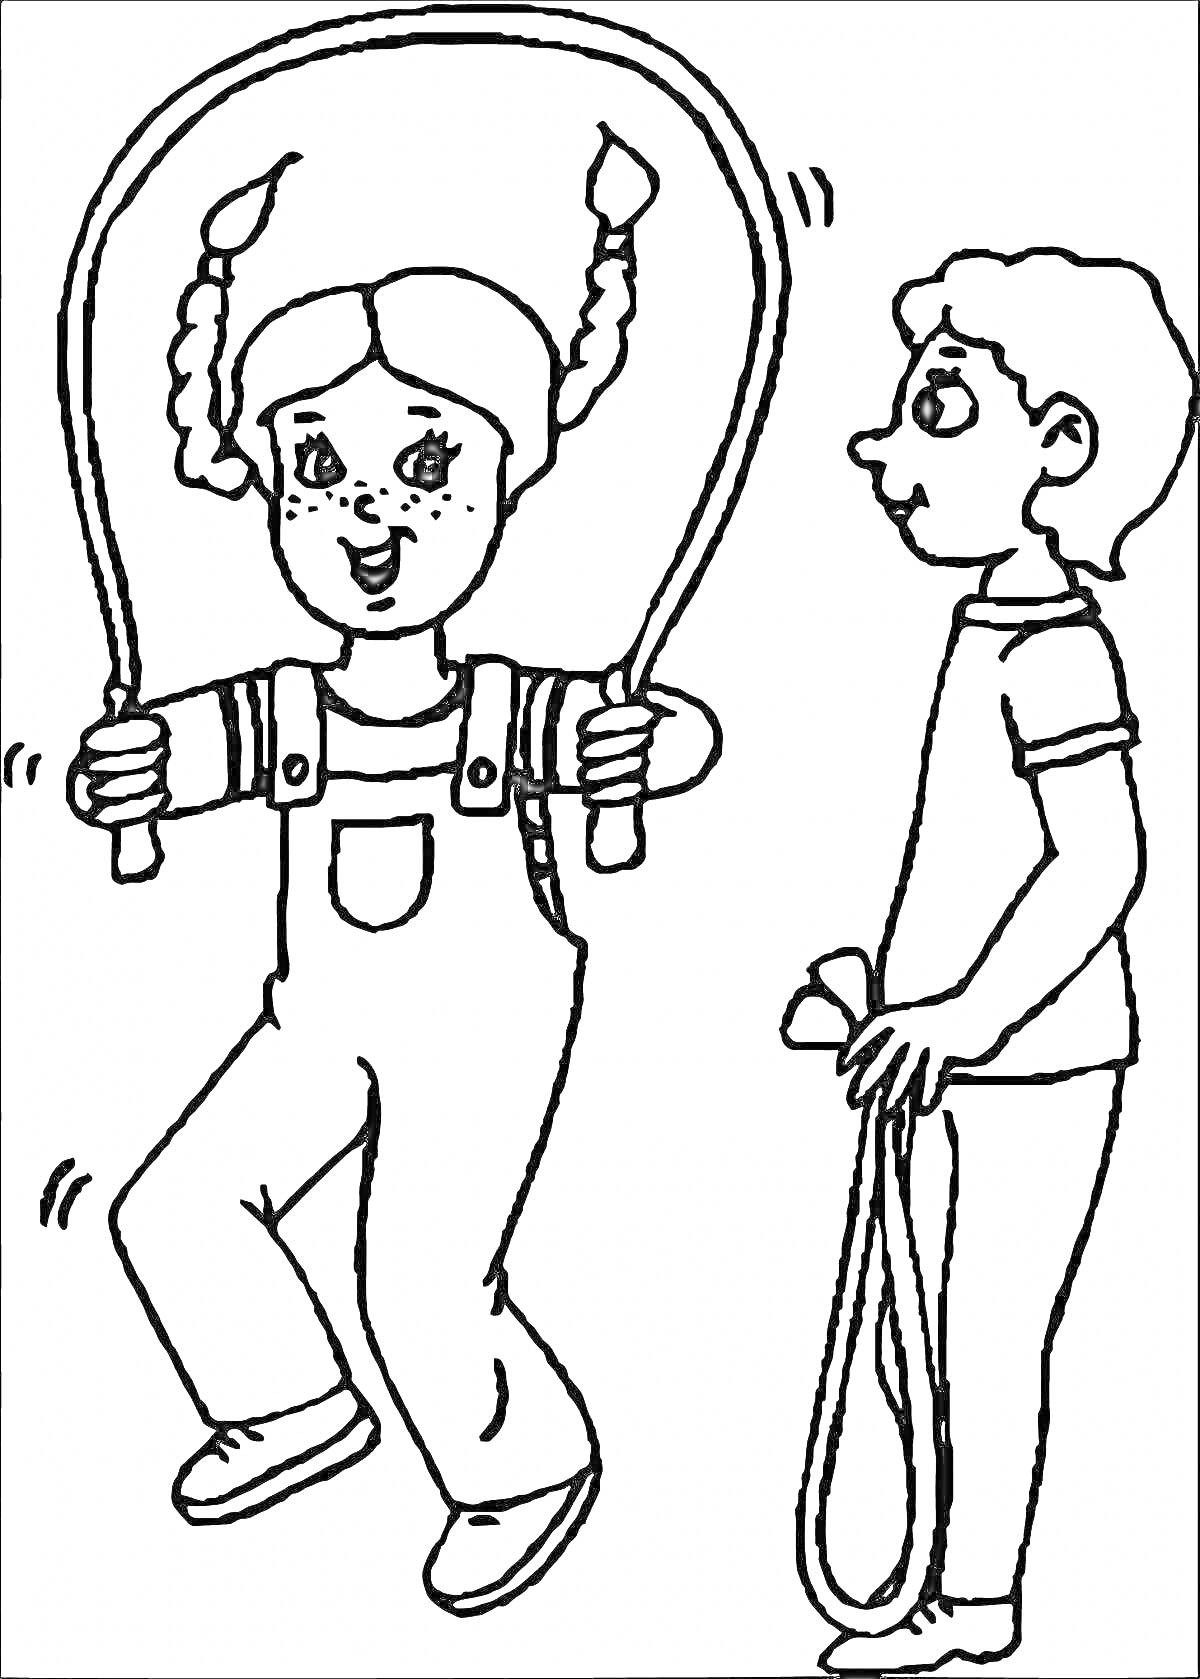 Раскраска Девочка прыгает через скакалку рядом с мальчиком